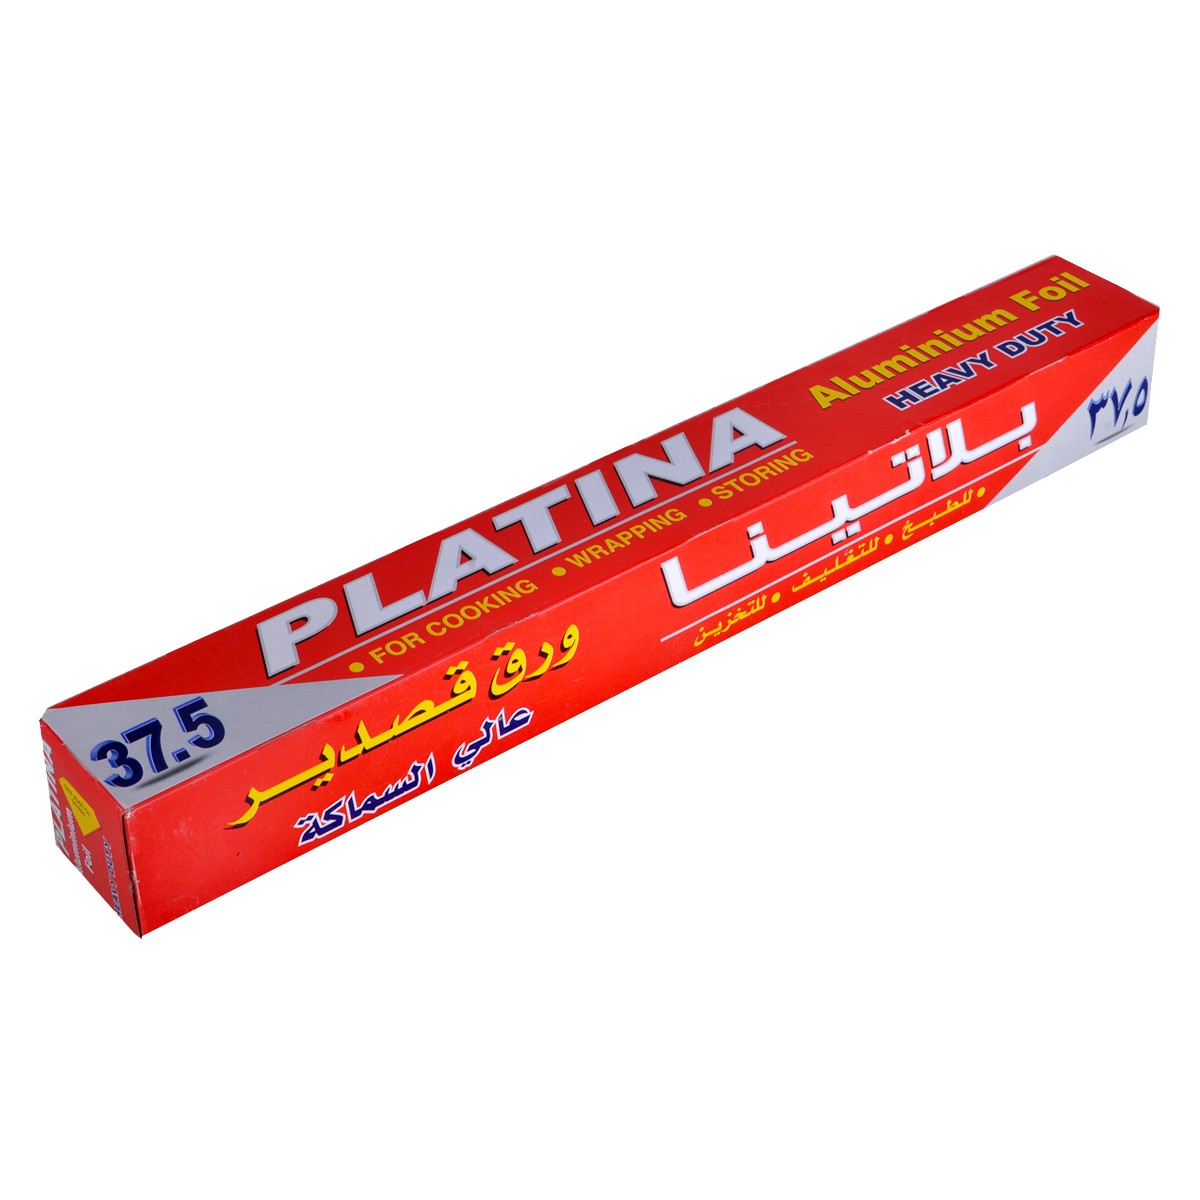 قصدير المنيوم بلاتينا , ( 4.5mts * 450mm )